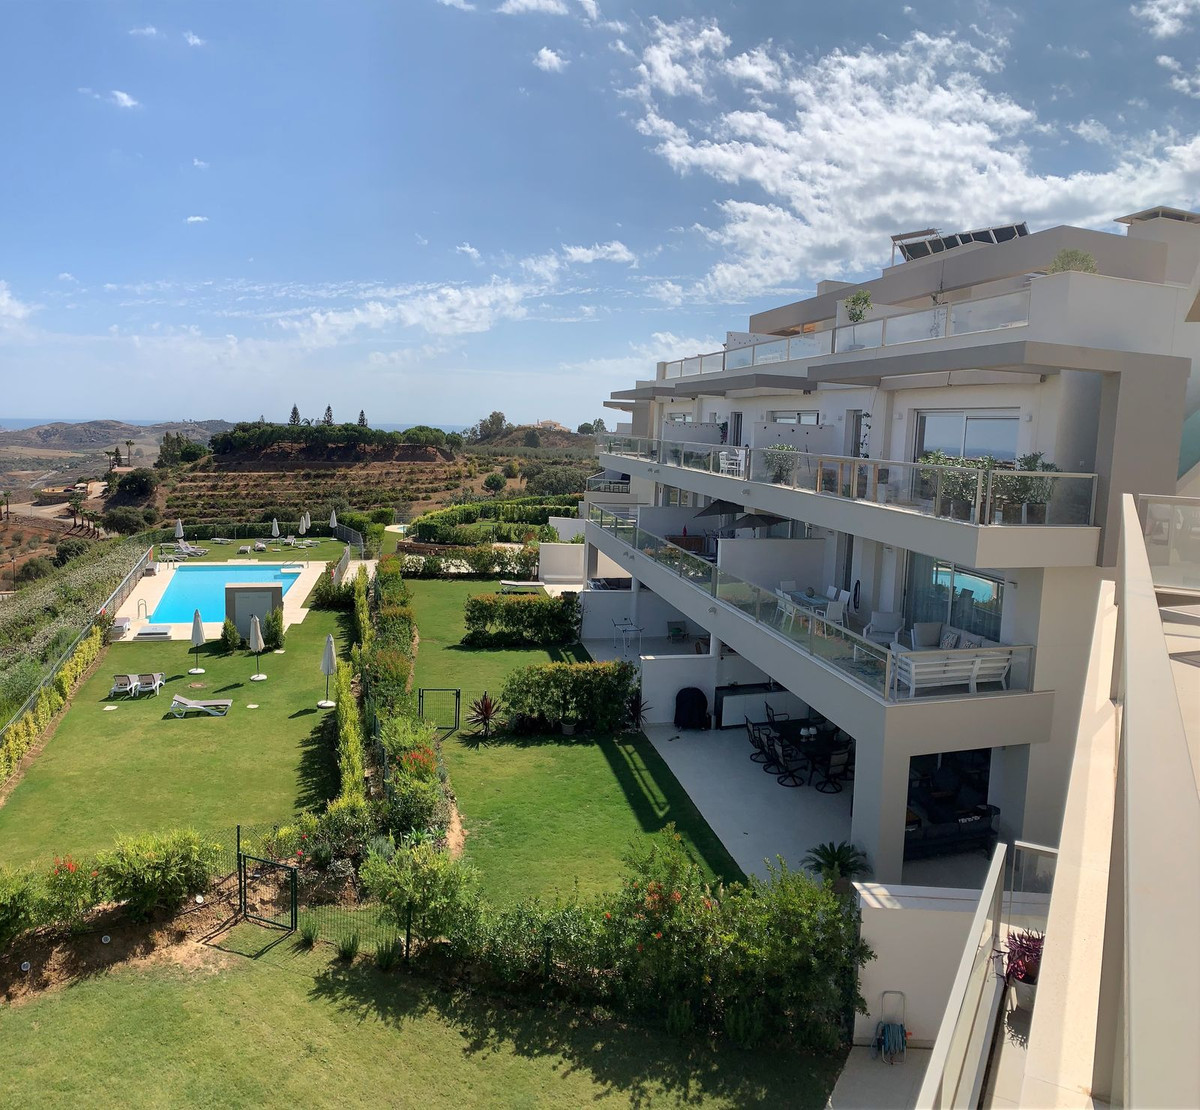 Penthouse en La Cala de Mijas, Costa del Sol, Málaga en Costa del Sol En venta